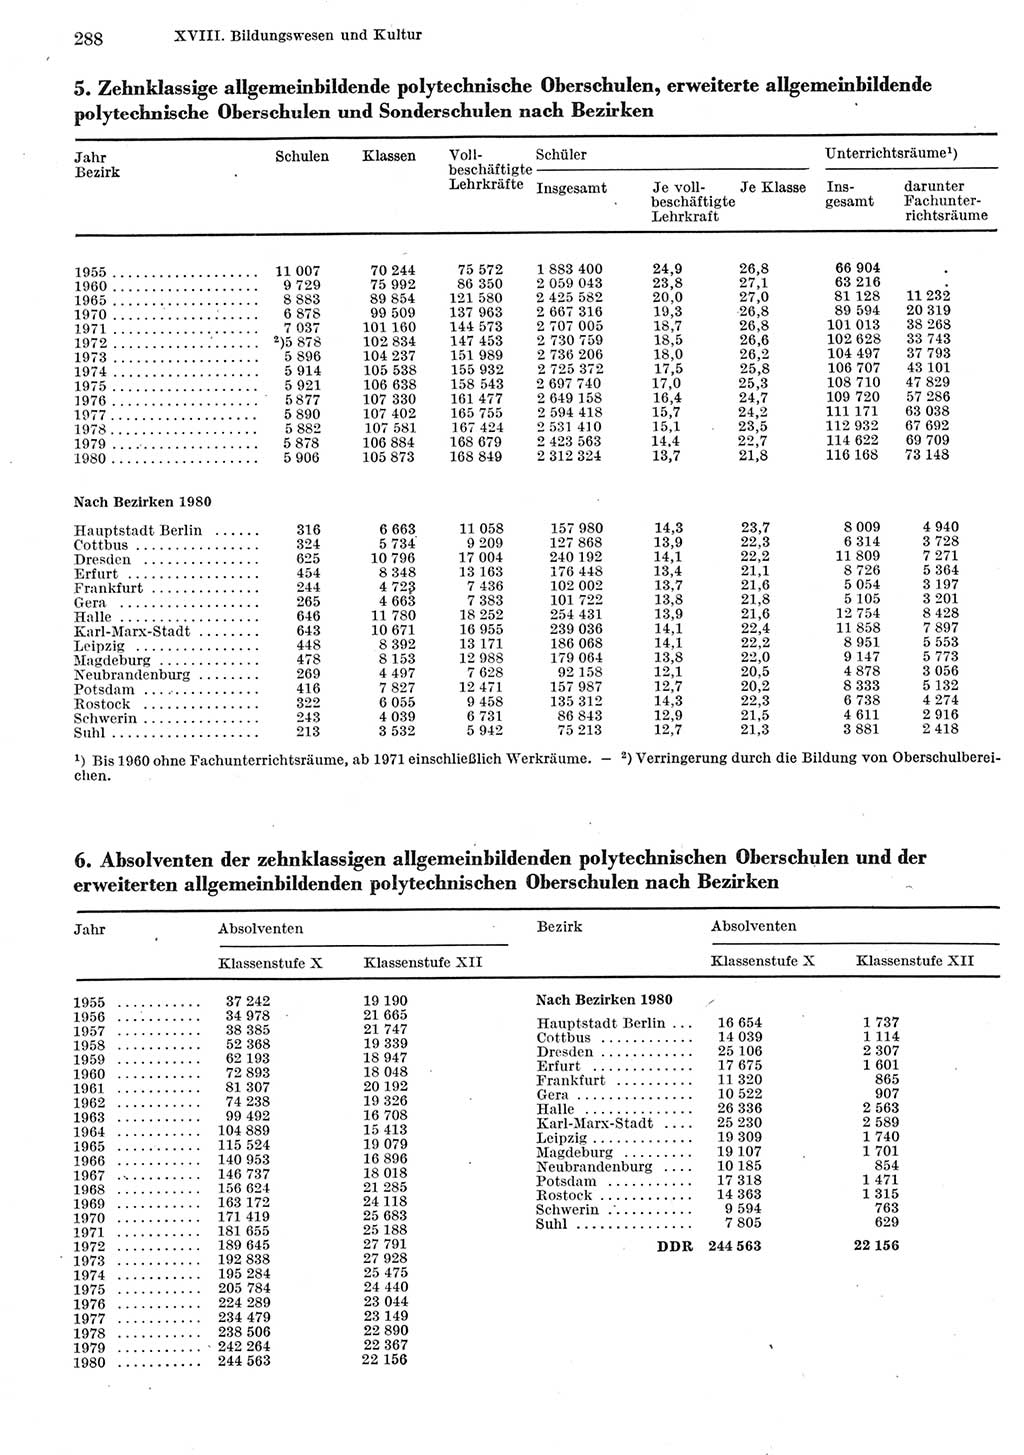 Statistisches Jahrbuch der Deutschen Demokratischen Republik (DDR) 1981, Seite 288 (Stat. Jb. DDR 1981, S. 288)